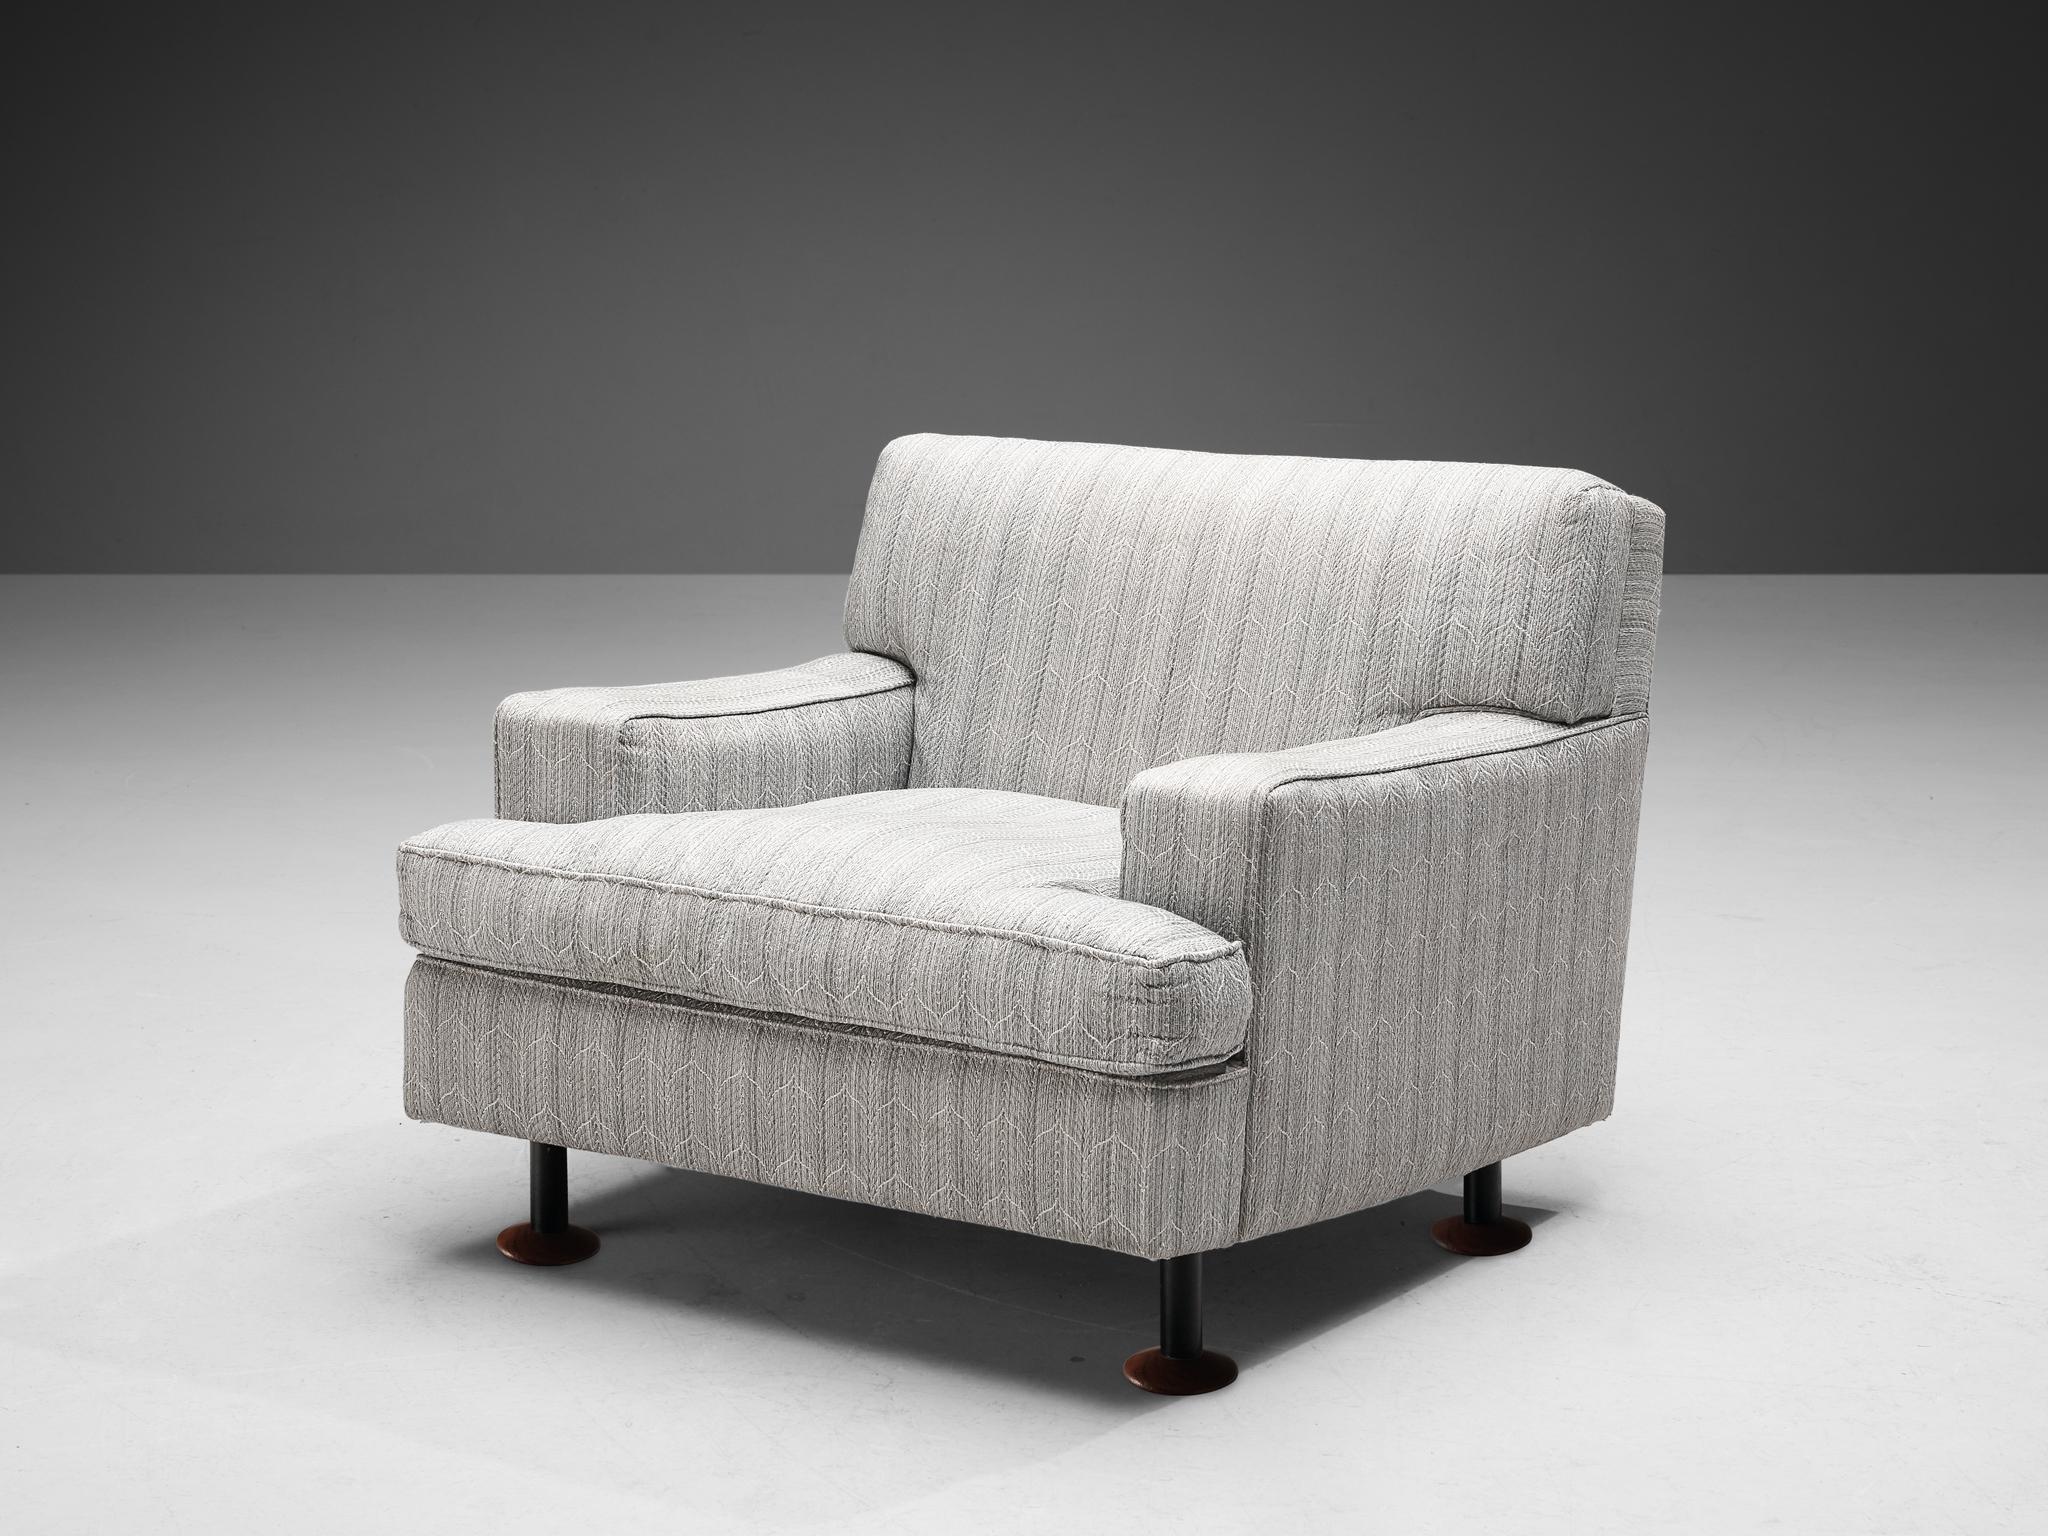 Marco Zanuso für Arflex, Sessel 'Square', Stoff, Metall, Holz, Italien, 1962

Dieser exzentrische Stuhl von Marco Zanuso ist gut ausgeführt und hat eine solide Konstruktion. Charakteristisch für dieses Modell sind die niedrig positionierten